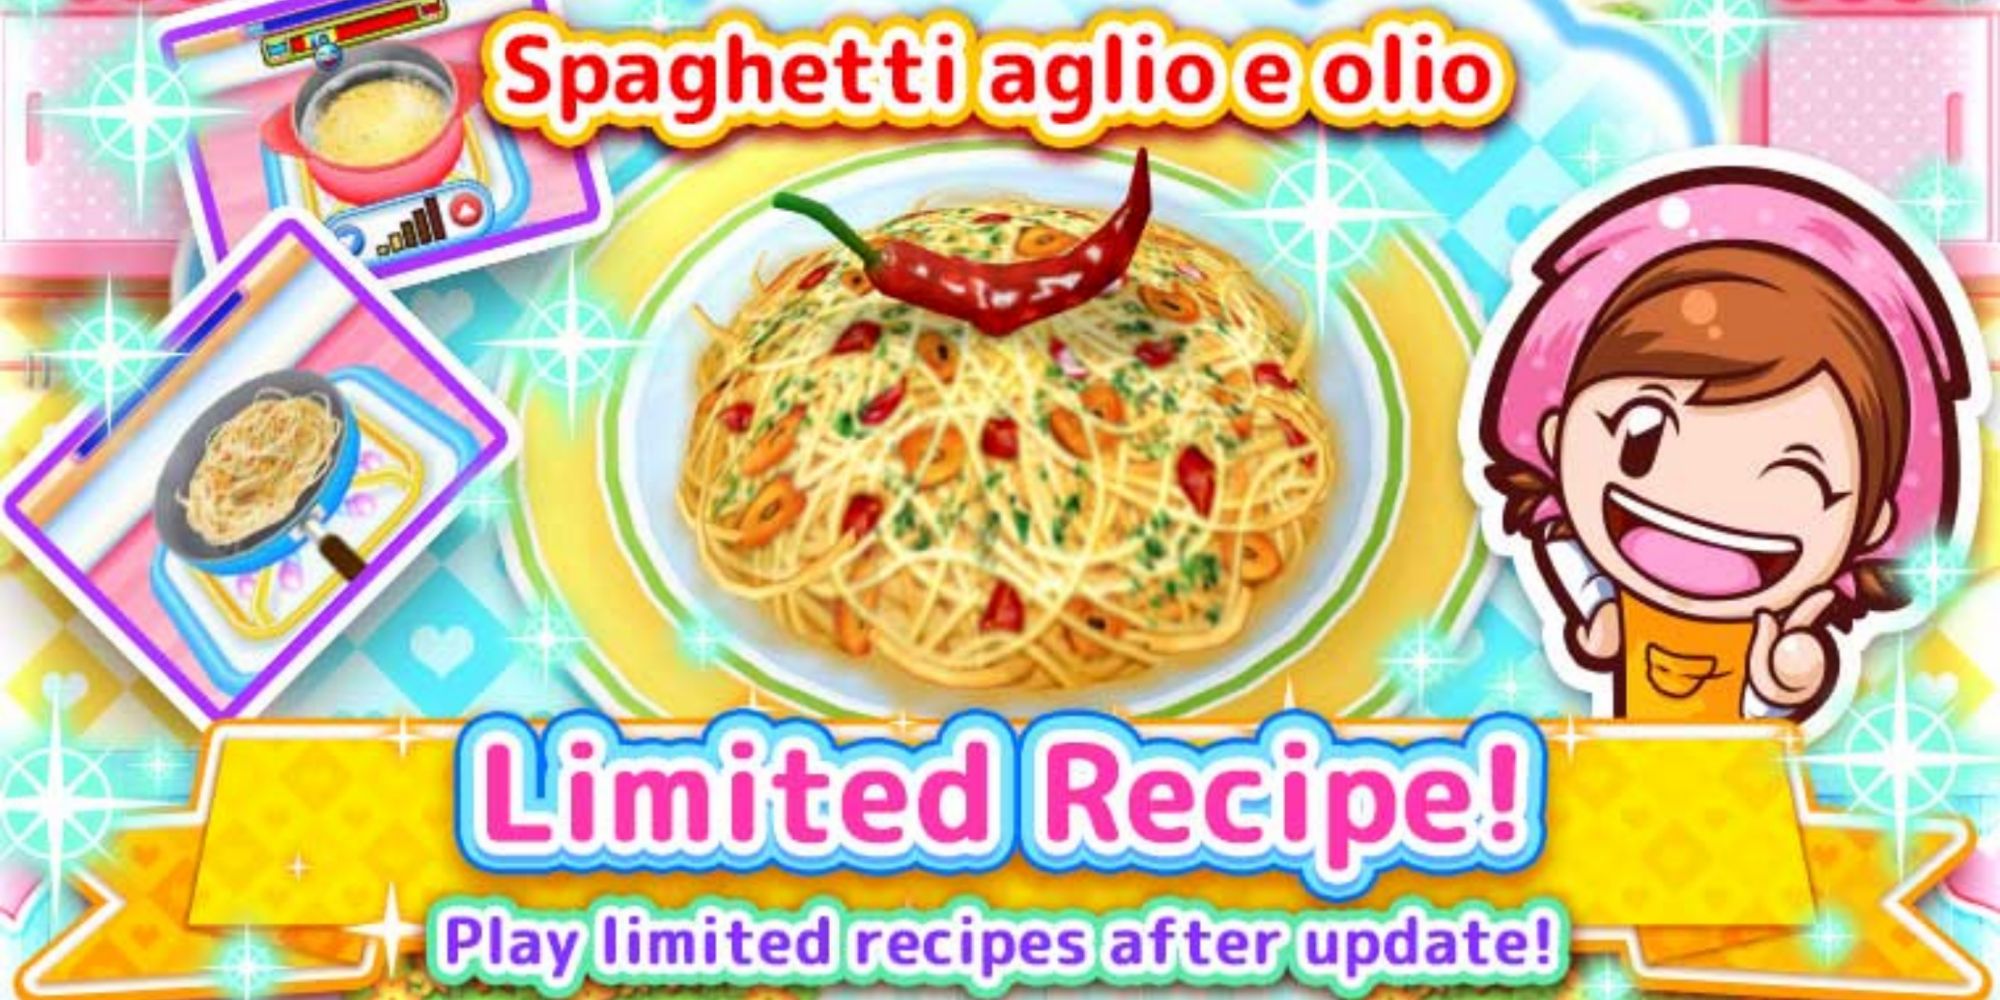 Mama presents the recipe spaghetti aglio e olio as a limited recipe